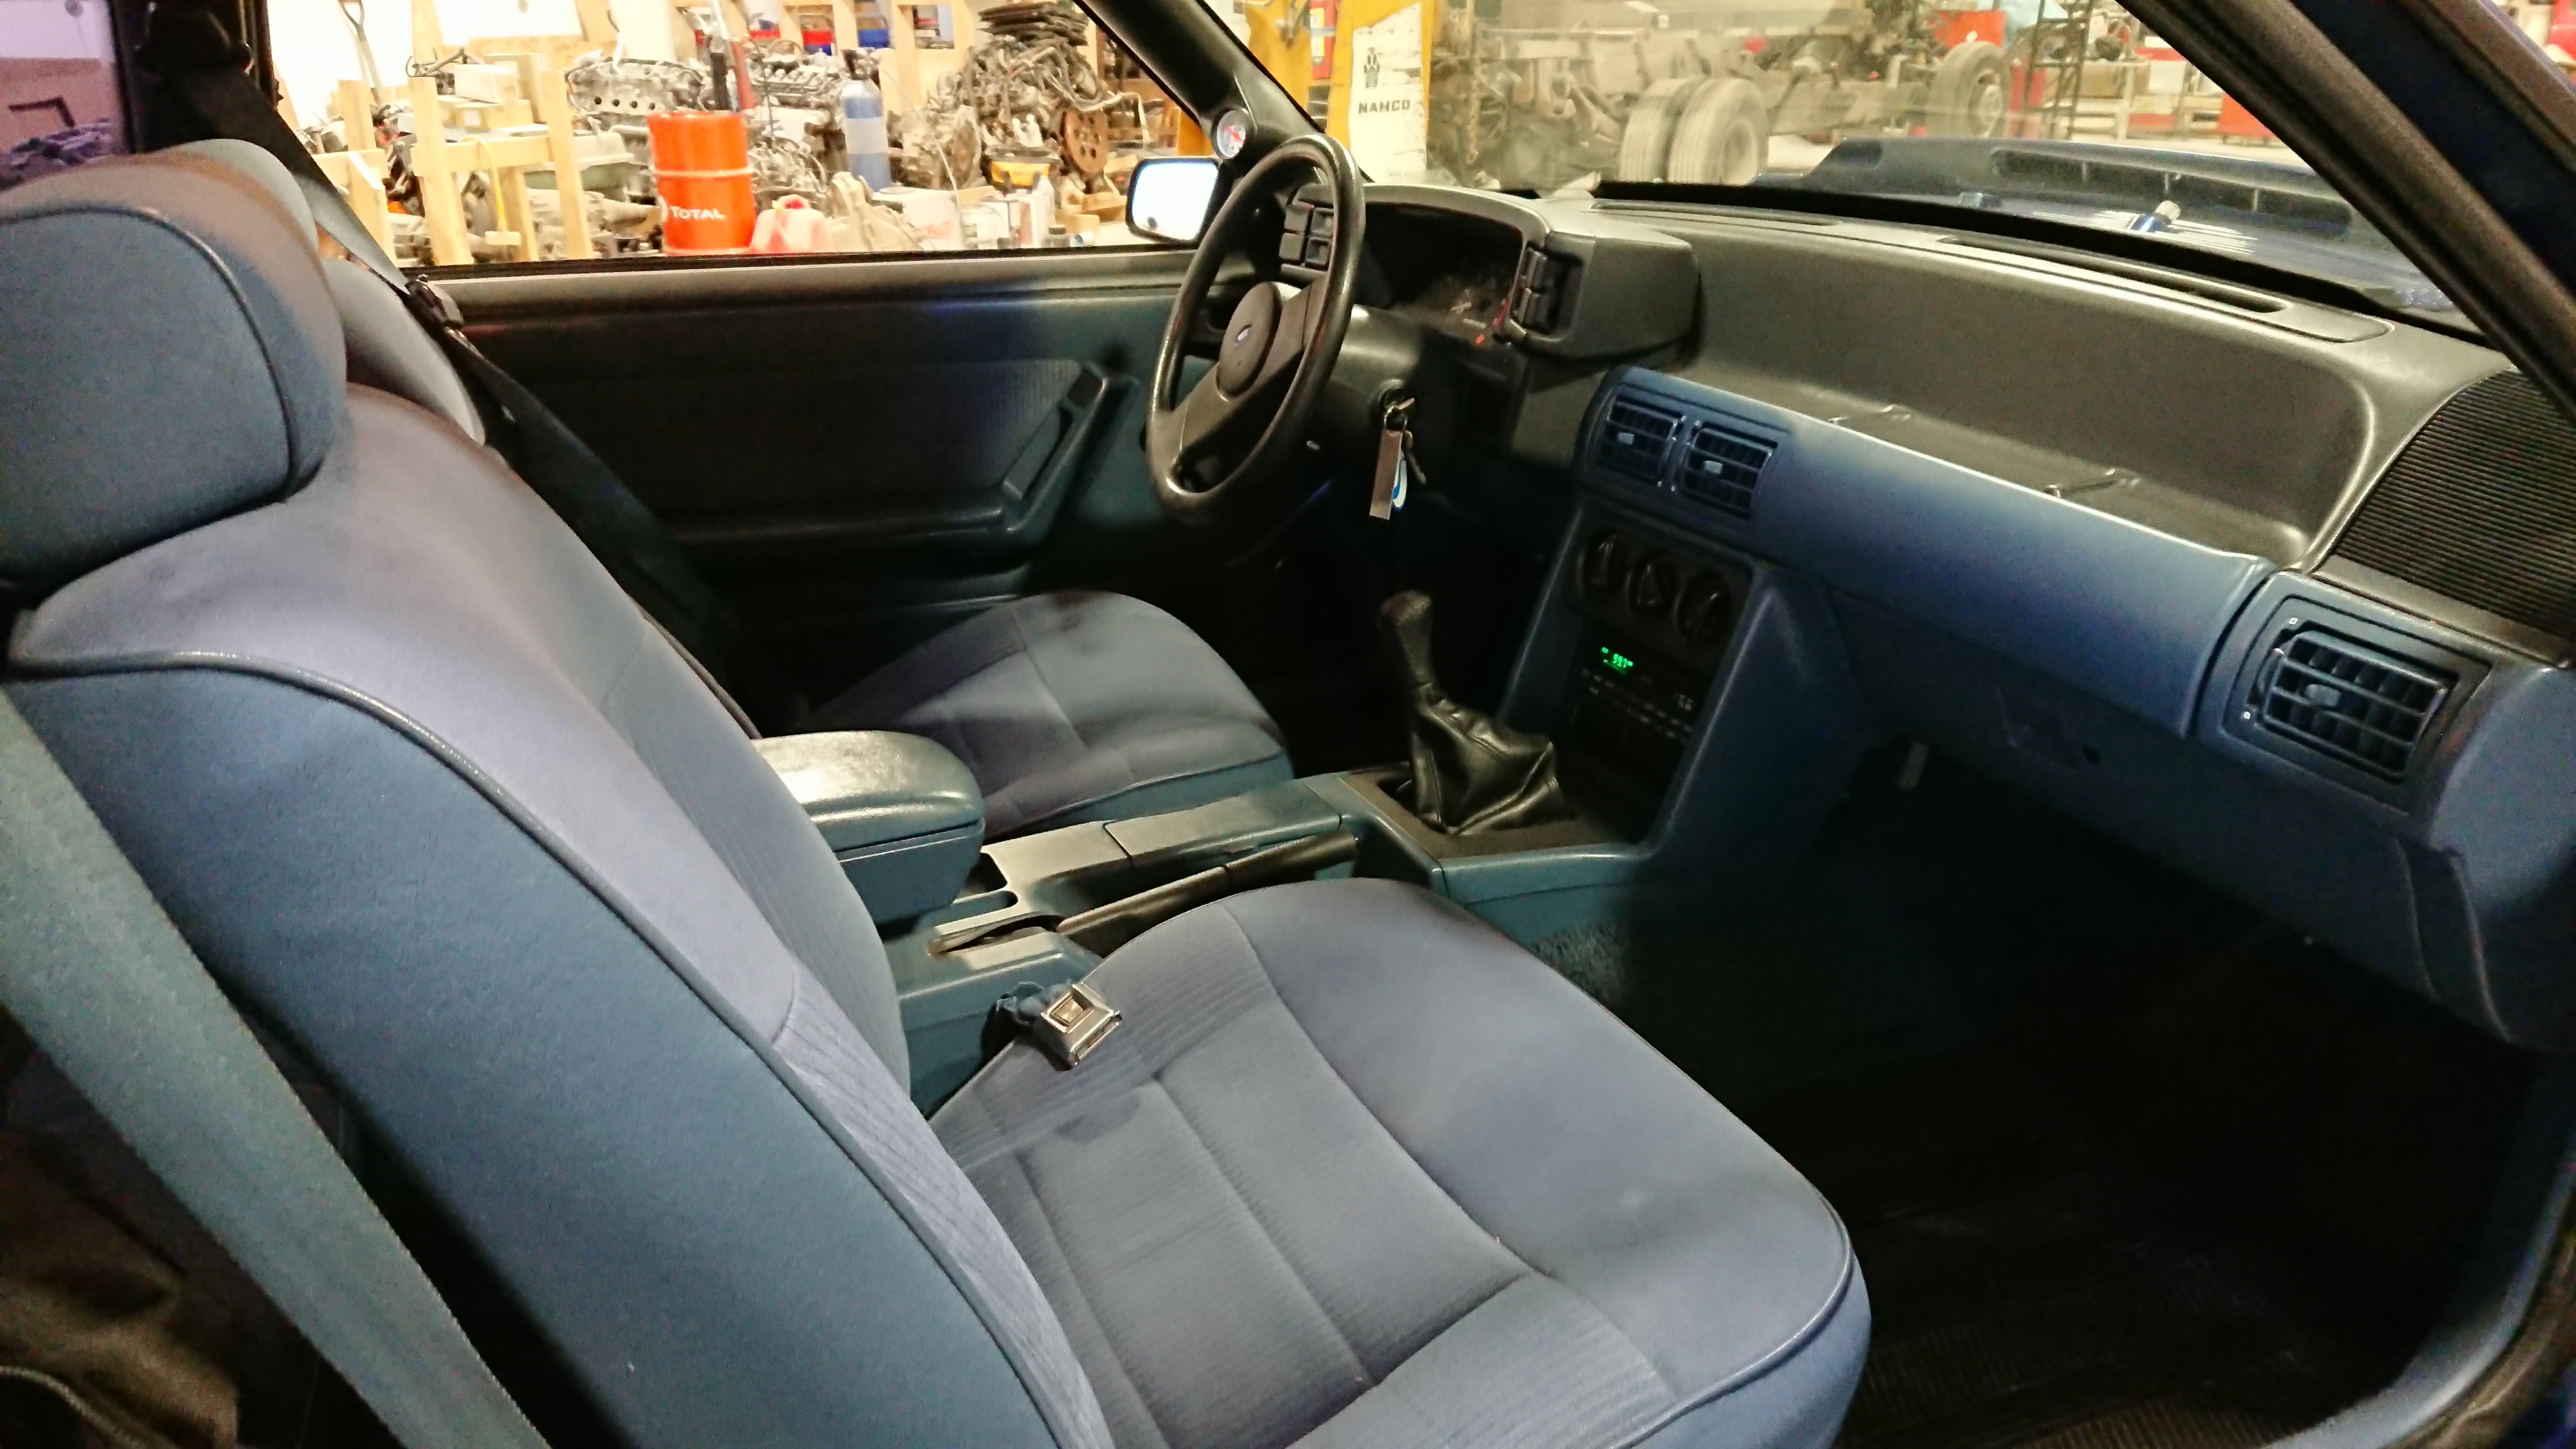 1989 Mustang Interior Kits